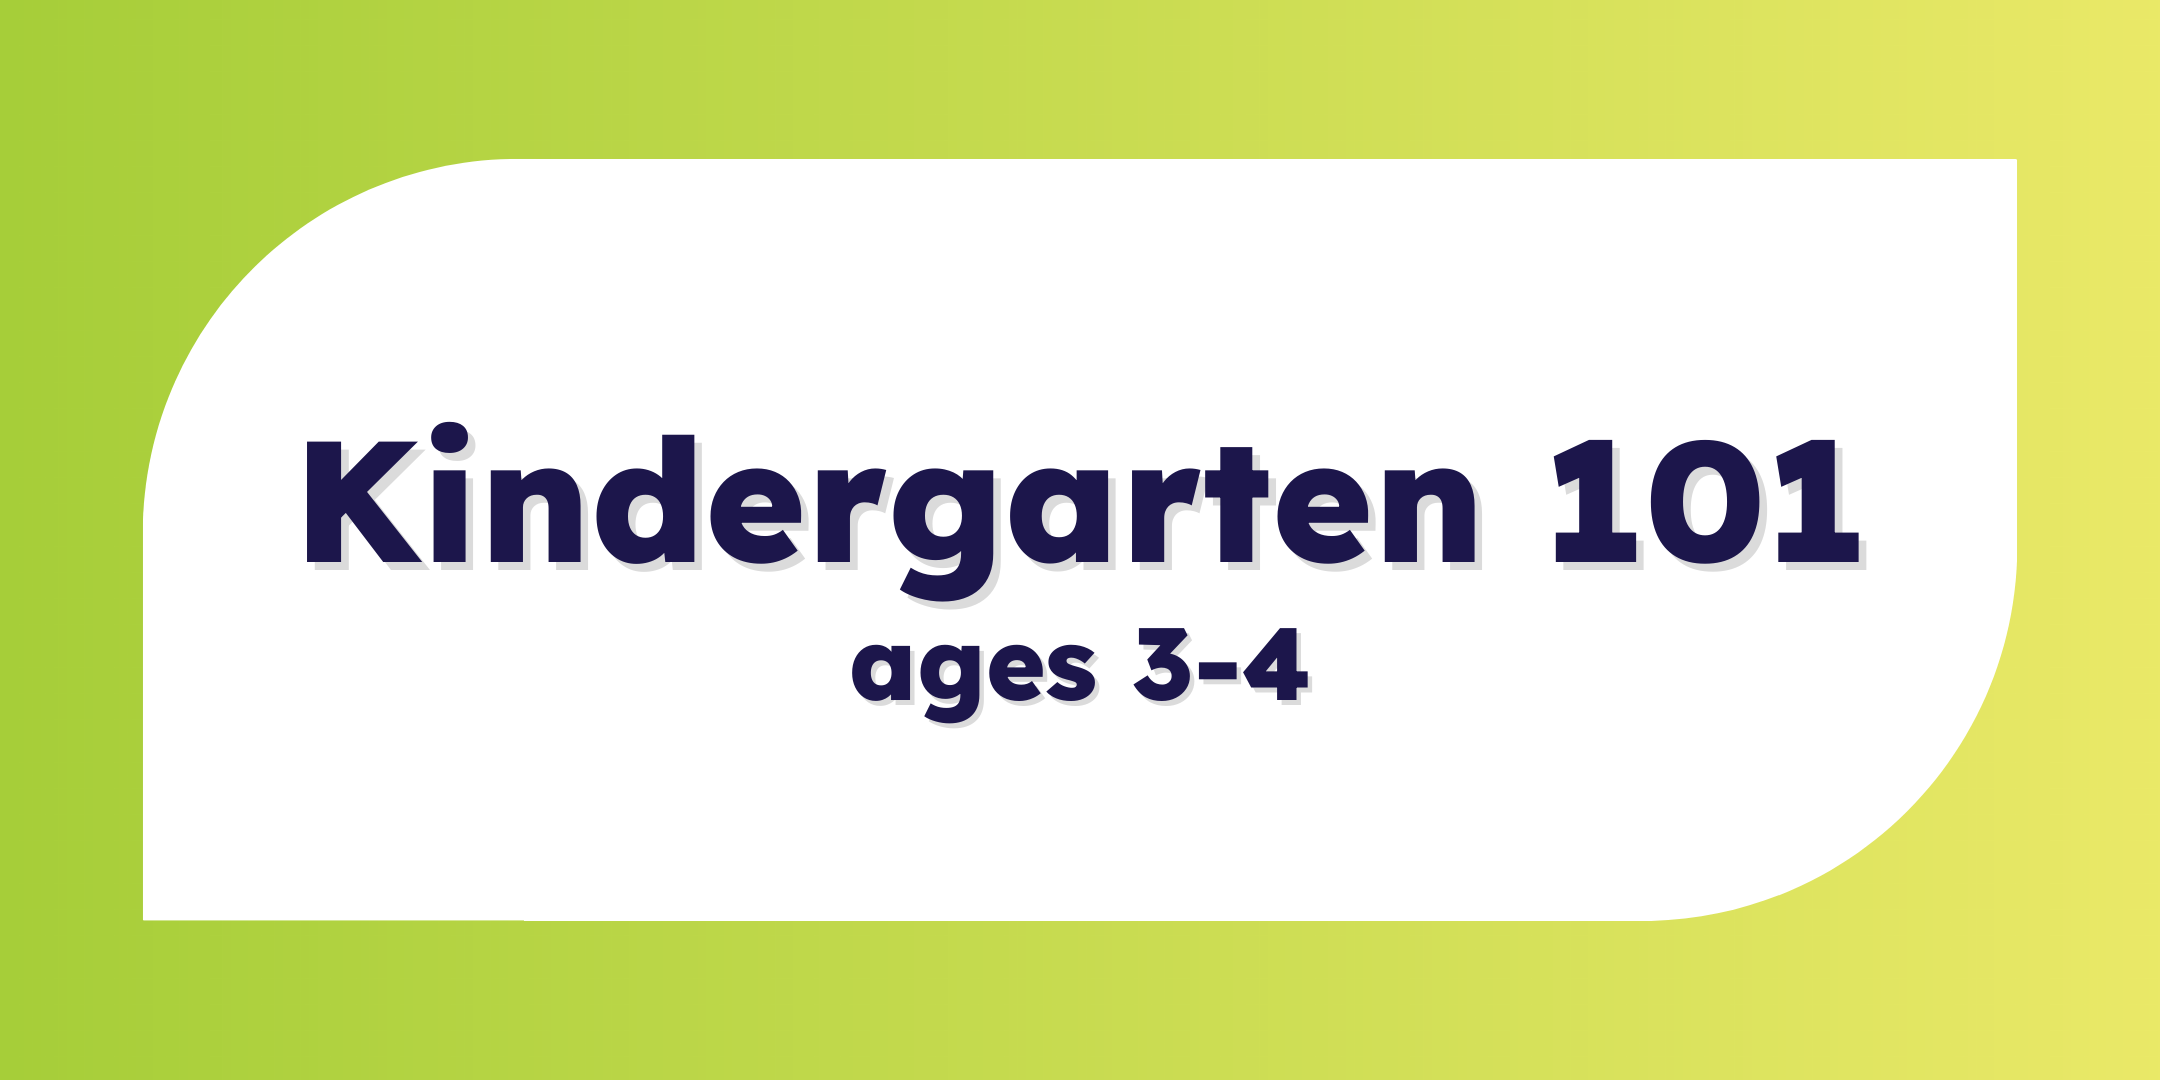 Kindergarten 101